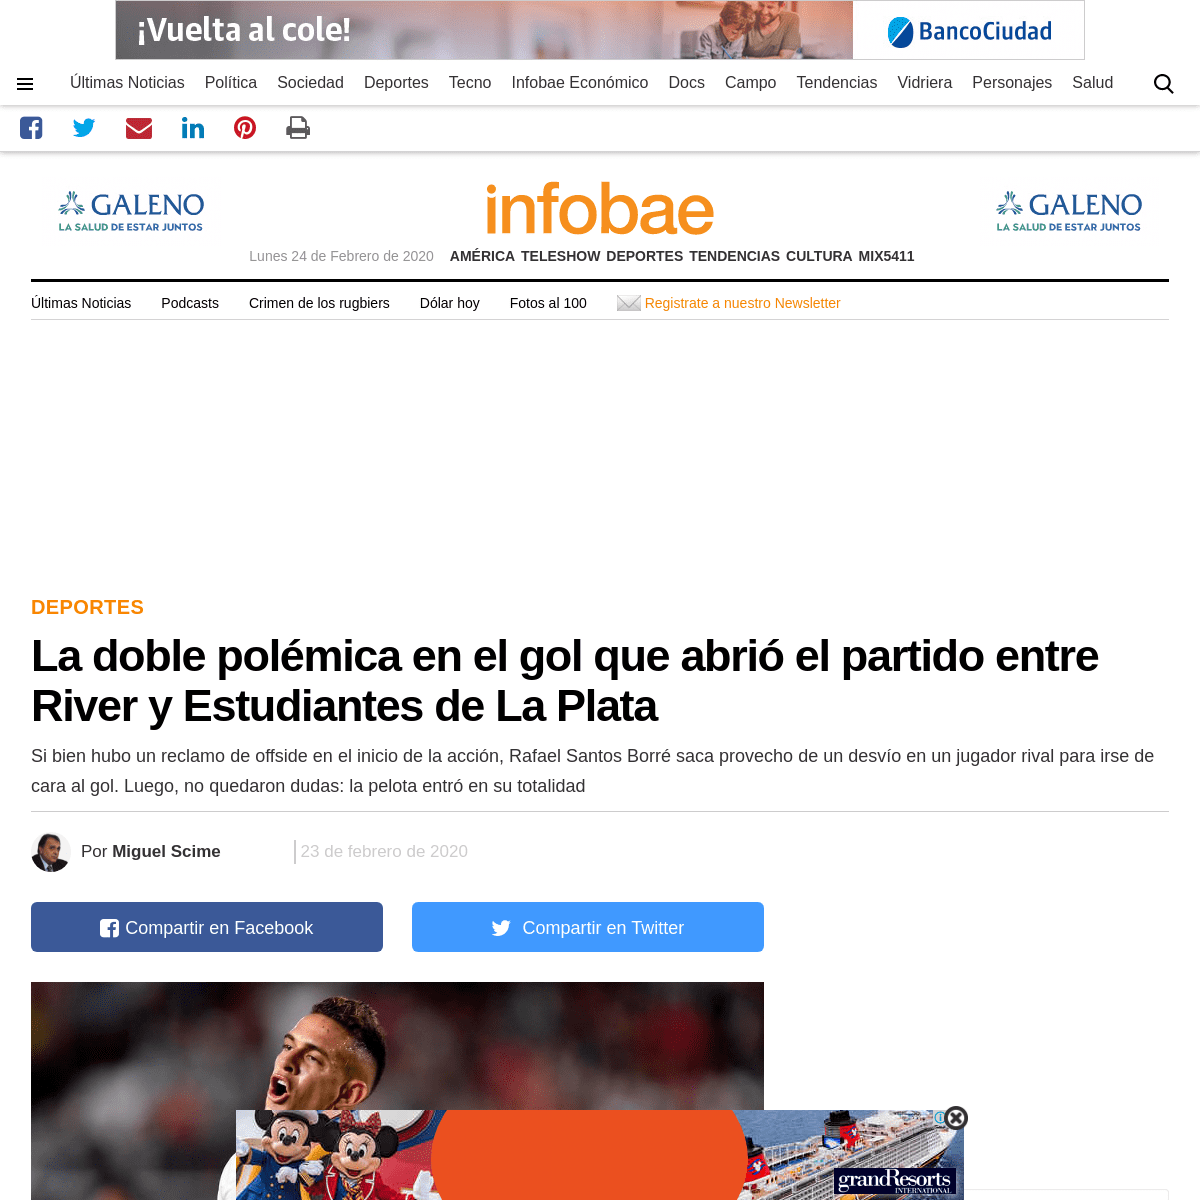 A complete backup of www.infobae.com/deportes/2020/02/24/la-doble-polemica-en-el-gol-que-abrio-el-partido-entre-river-y-estudian